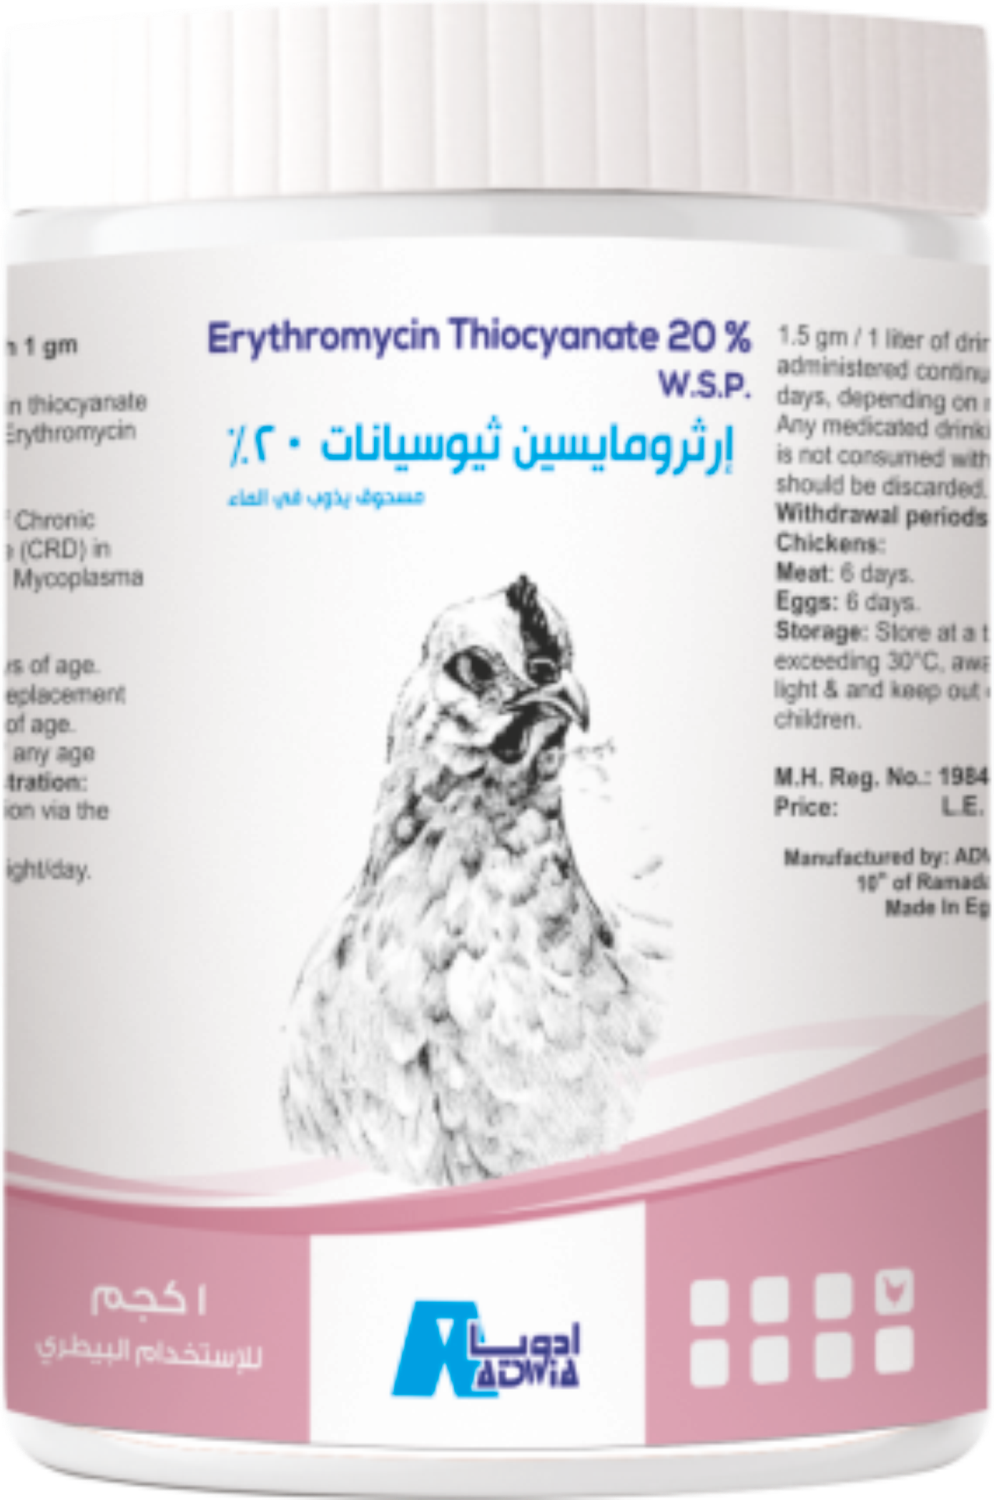 Erythromycin Thiocyanate 20%